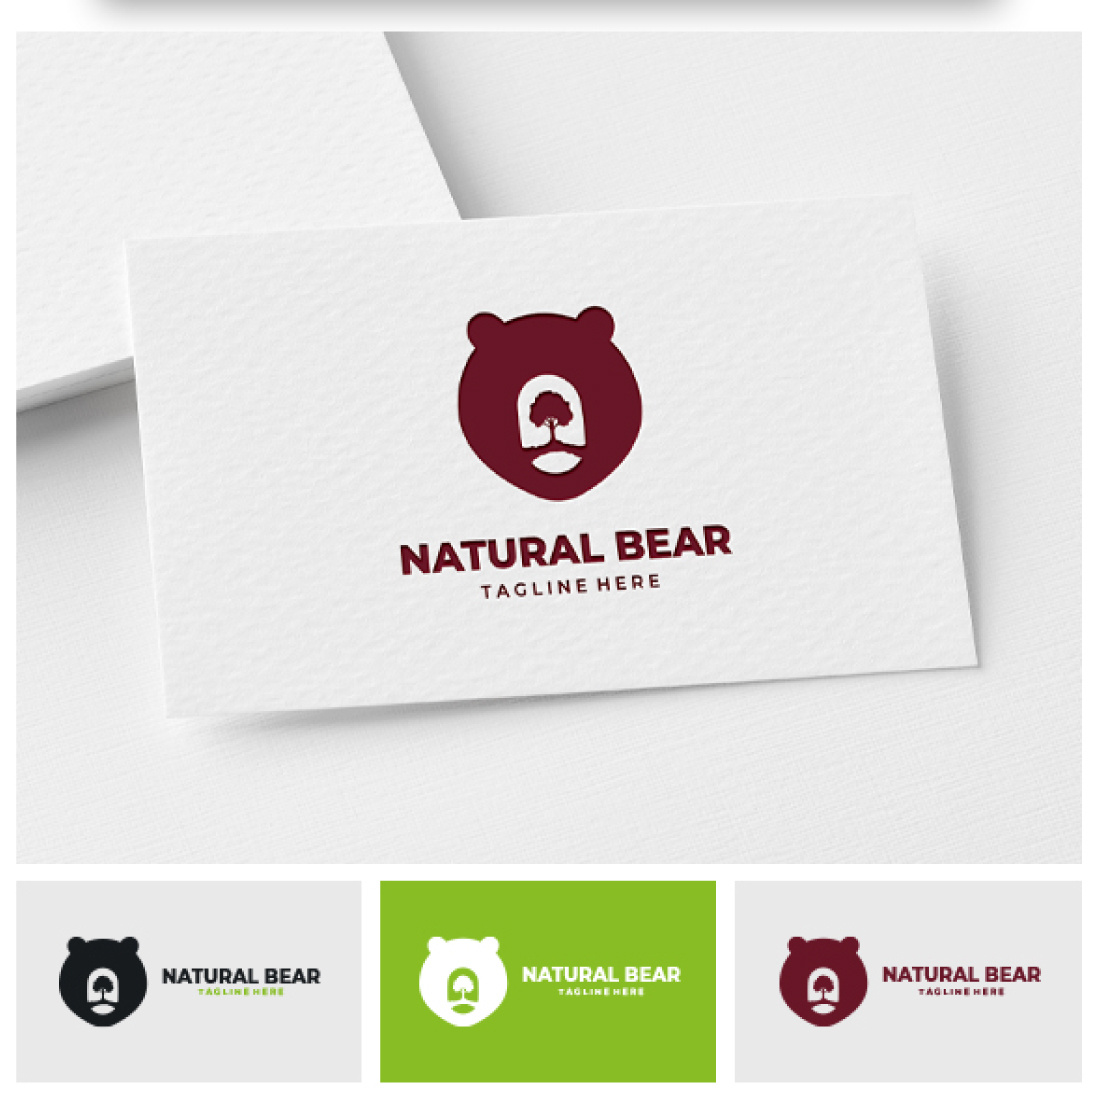 Natural Bear Logo preview image.